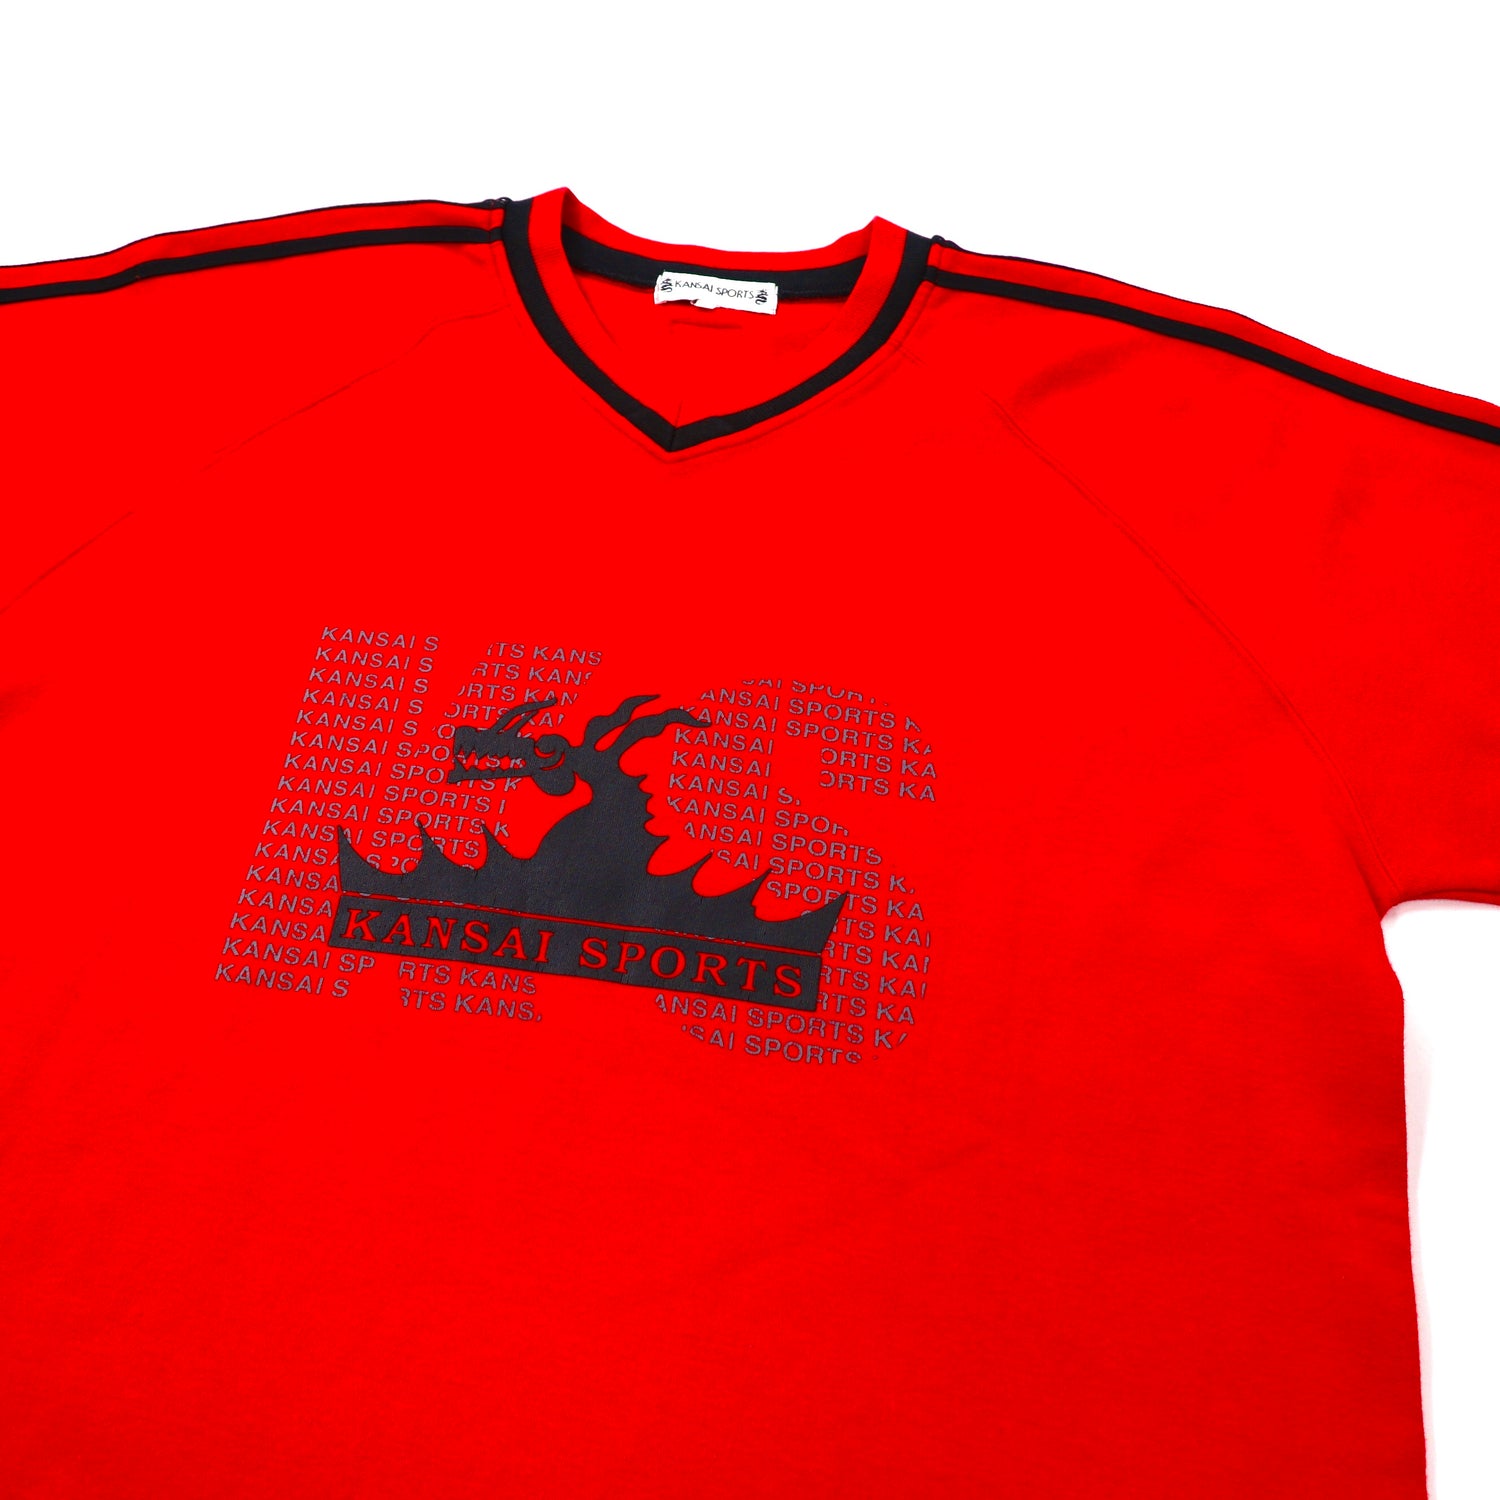 Kansai Sports V -neck Sweatshirt M Red Cotton Yamamoto Kansai 90s